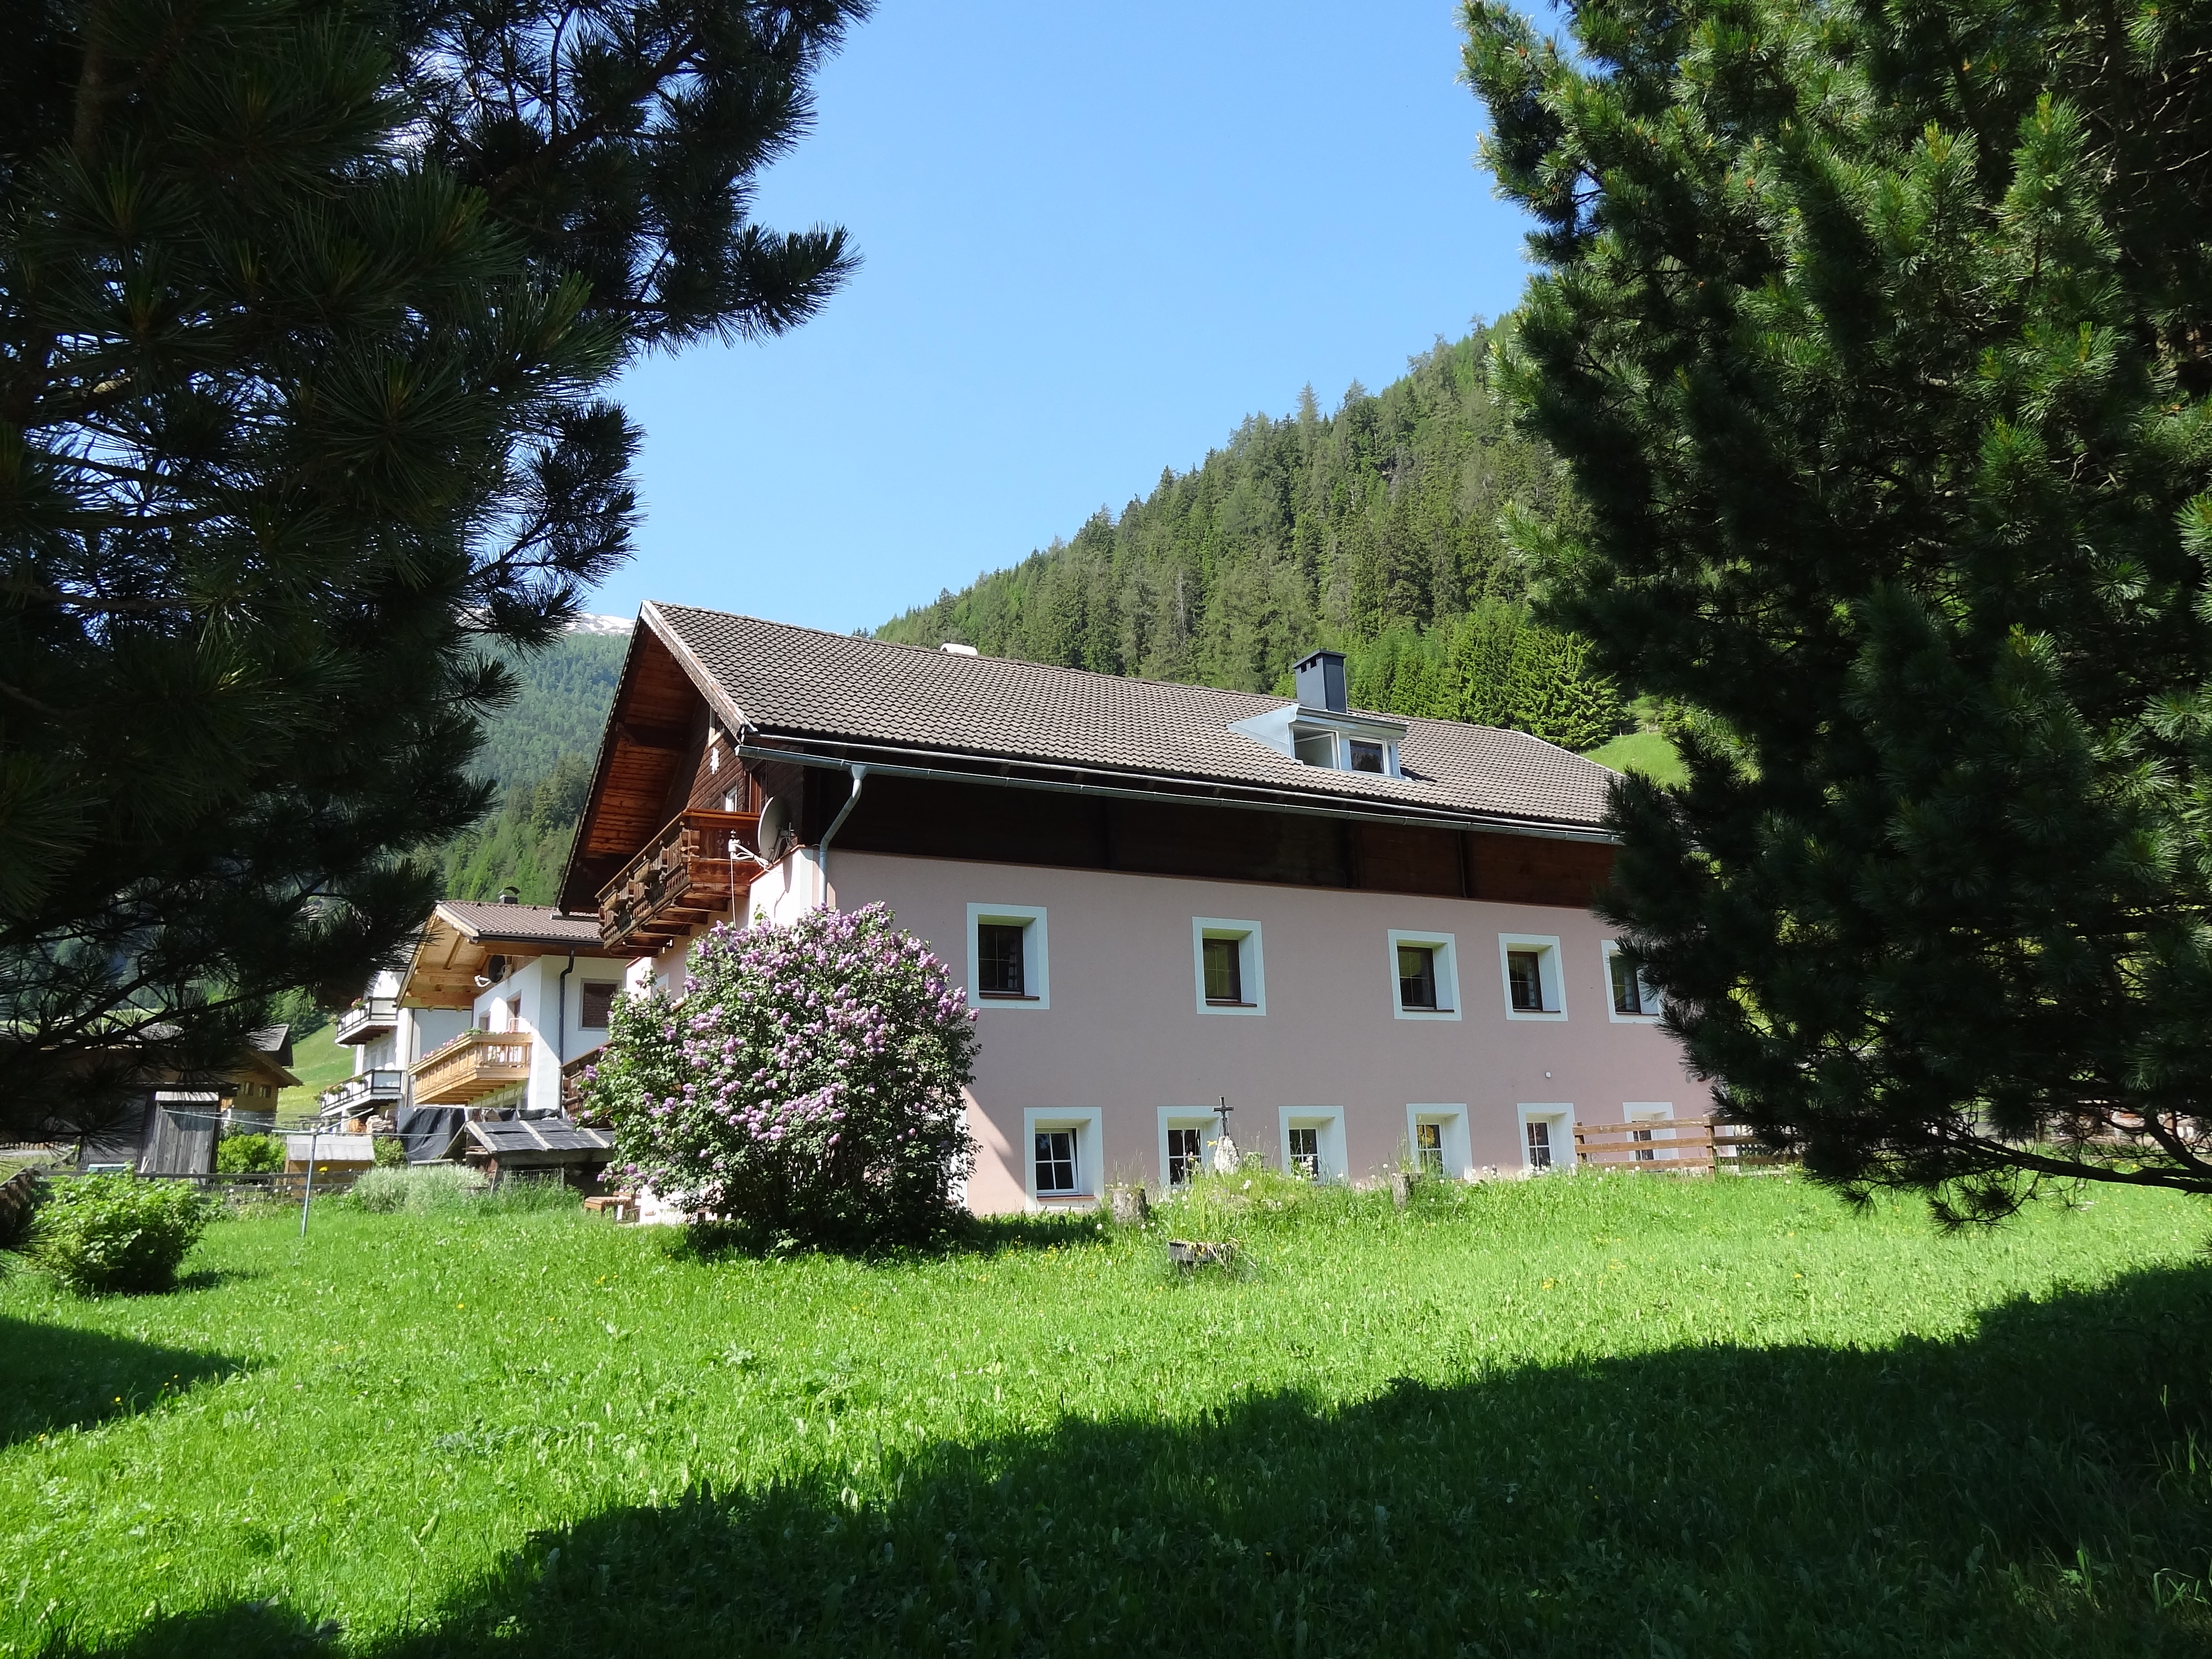 Ferienhaus Meins in Osttirol, Kals